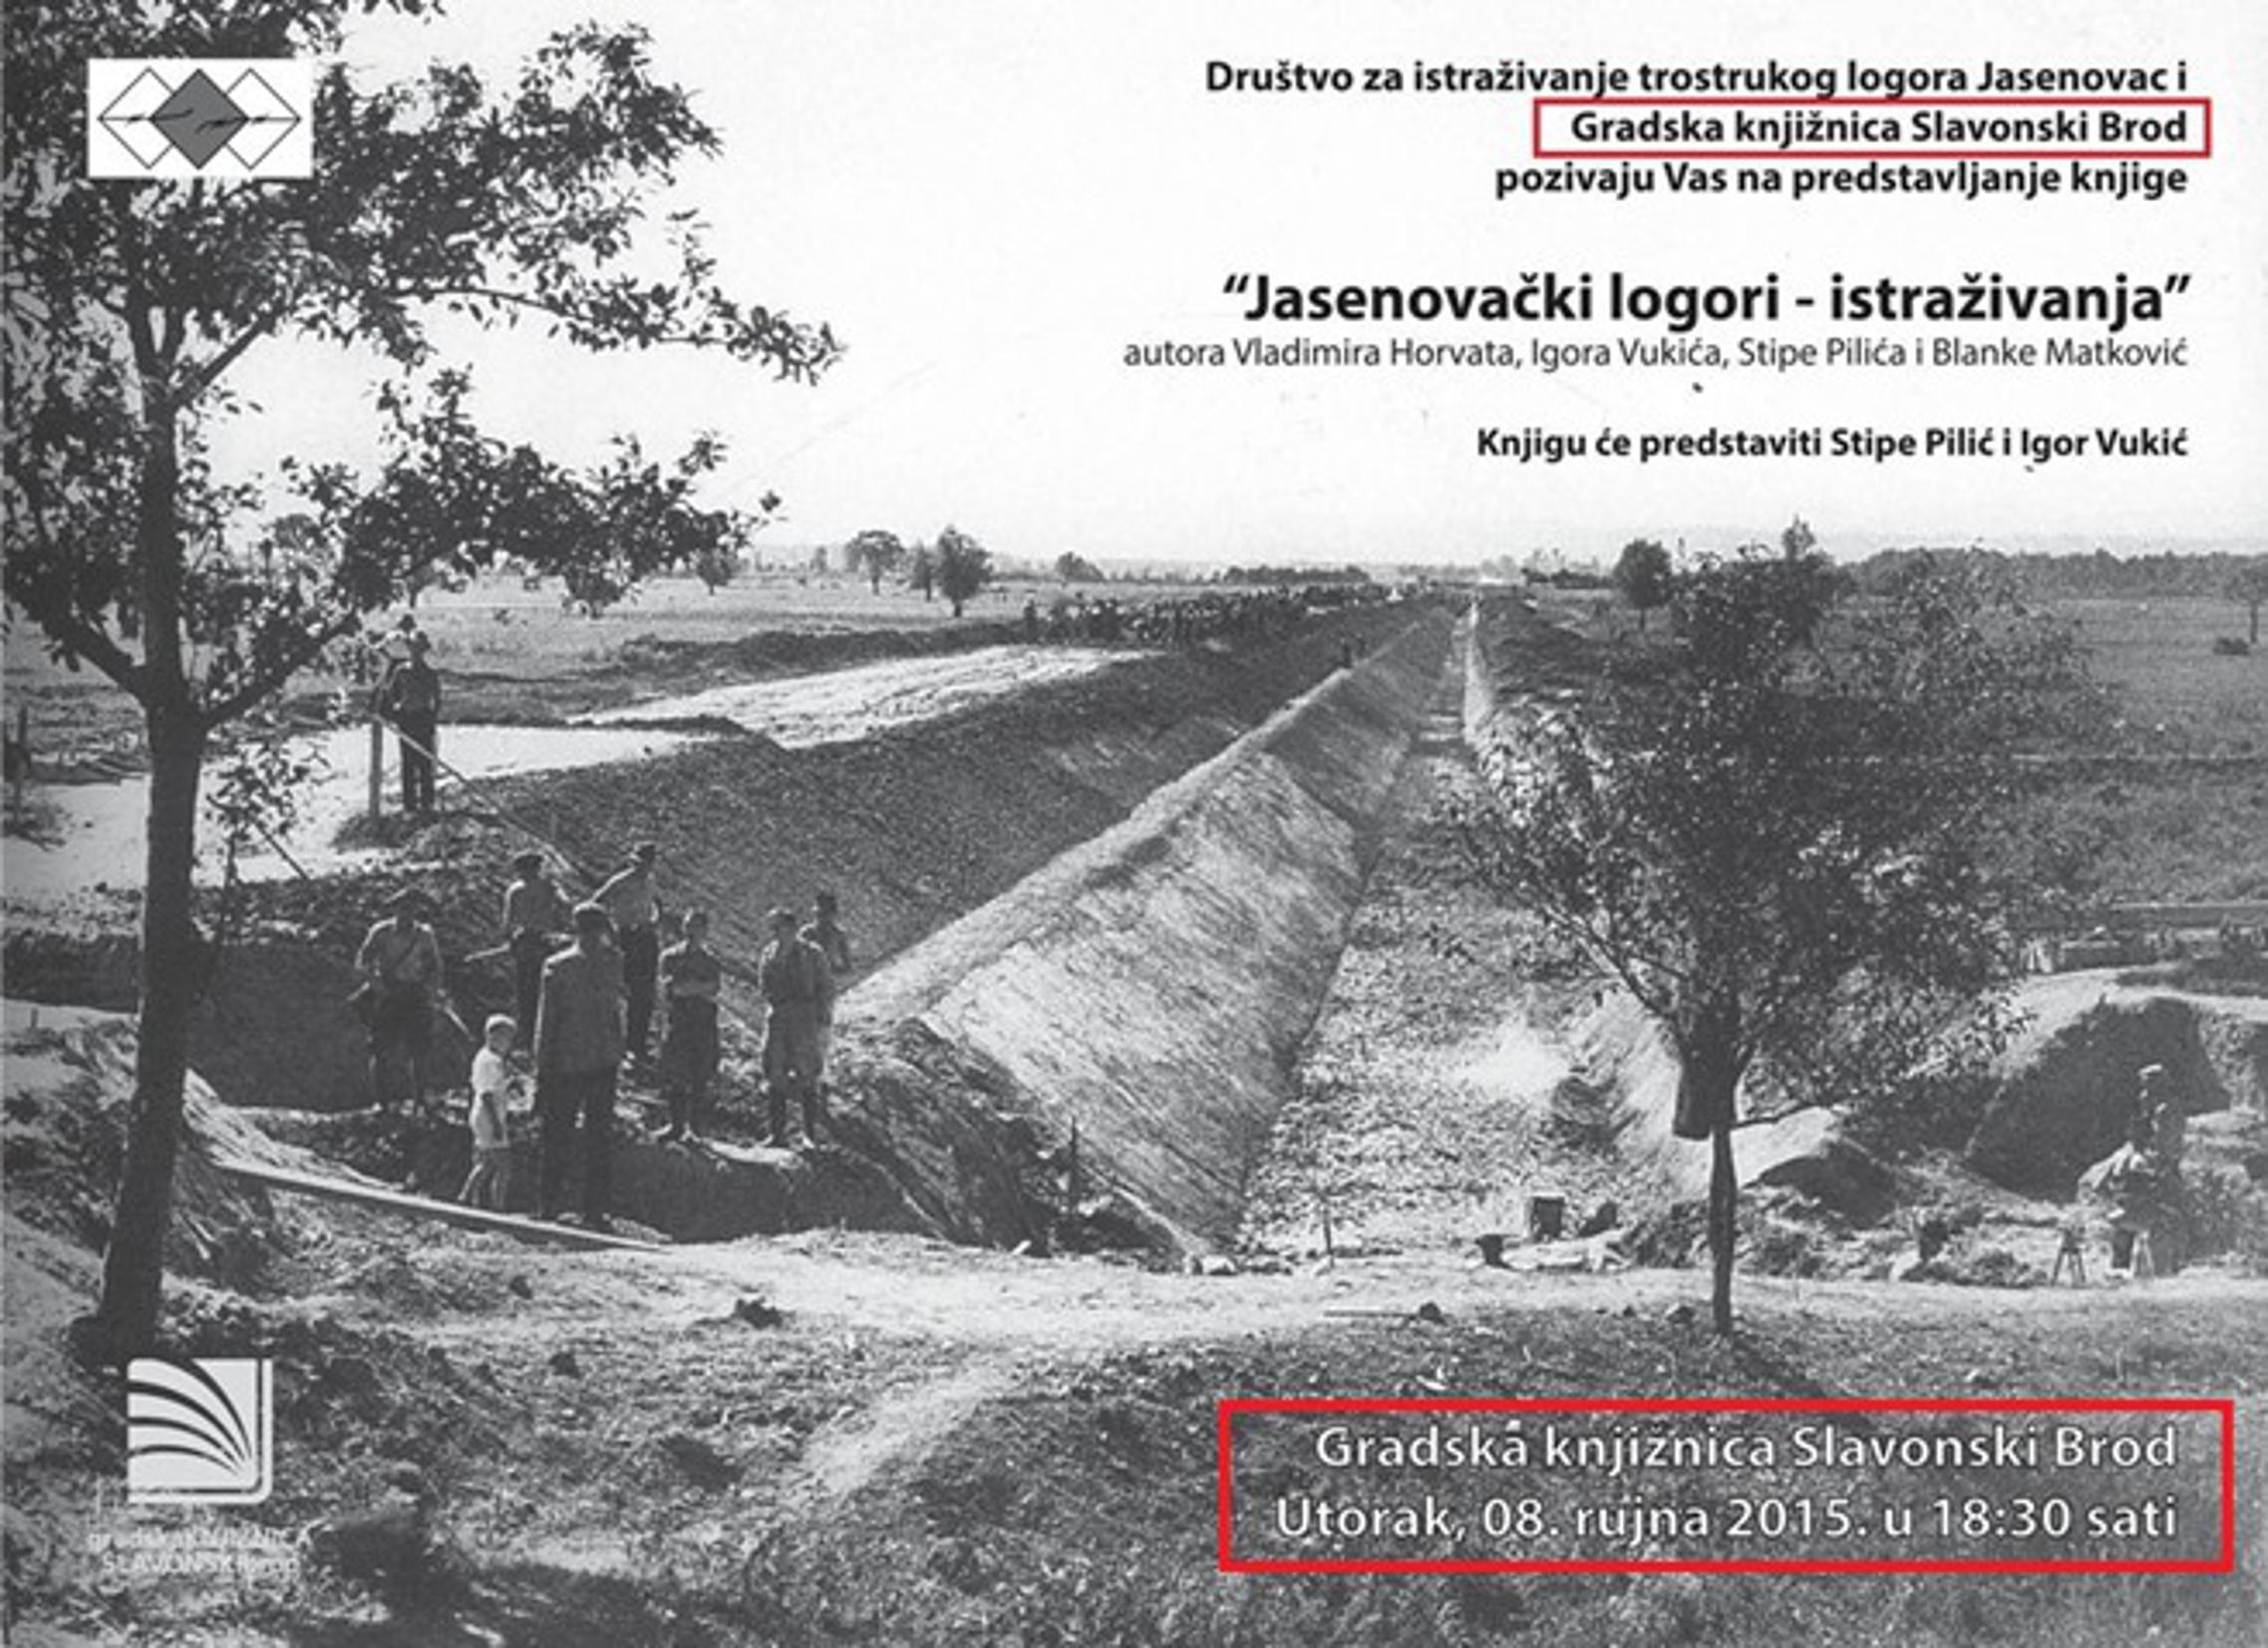 'Jasenovca' kao radni logor, a ne mjesto 'državnog' genocida